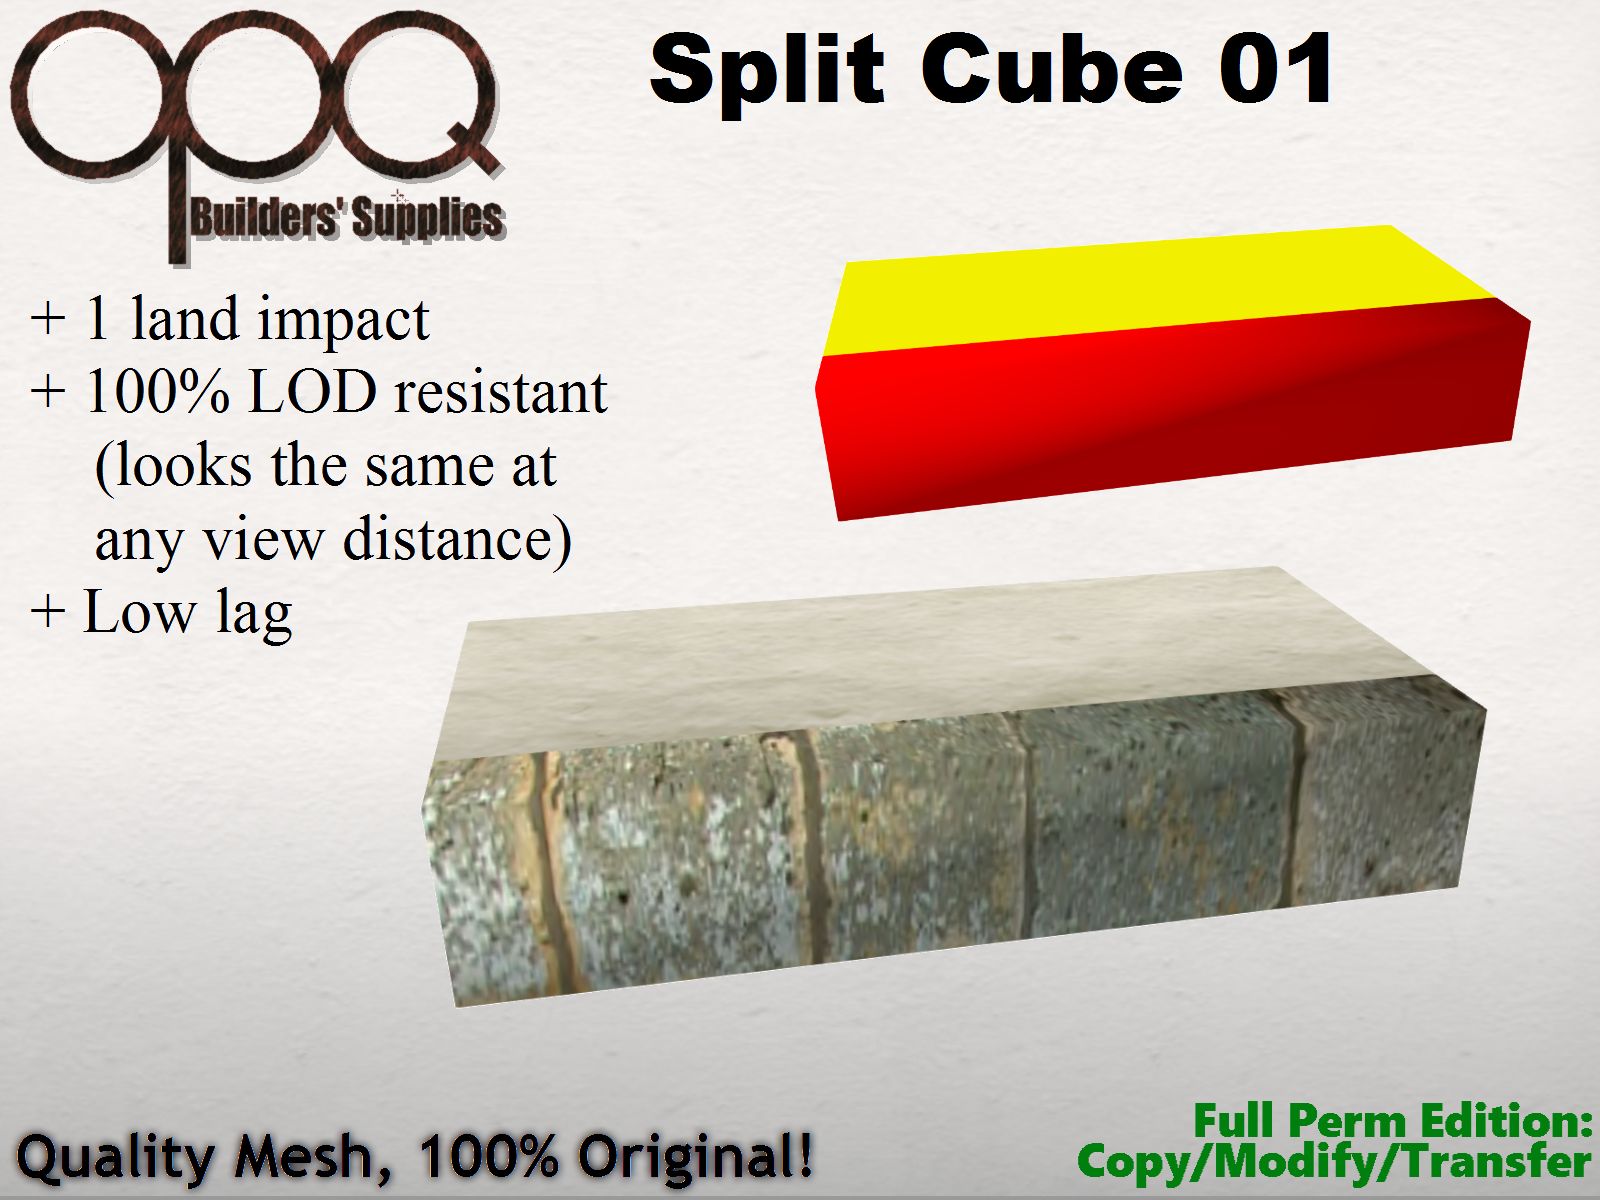 OPQ Split Cube 01 Poster.jpg